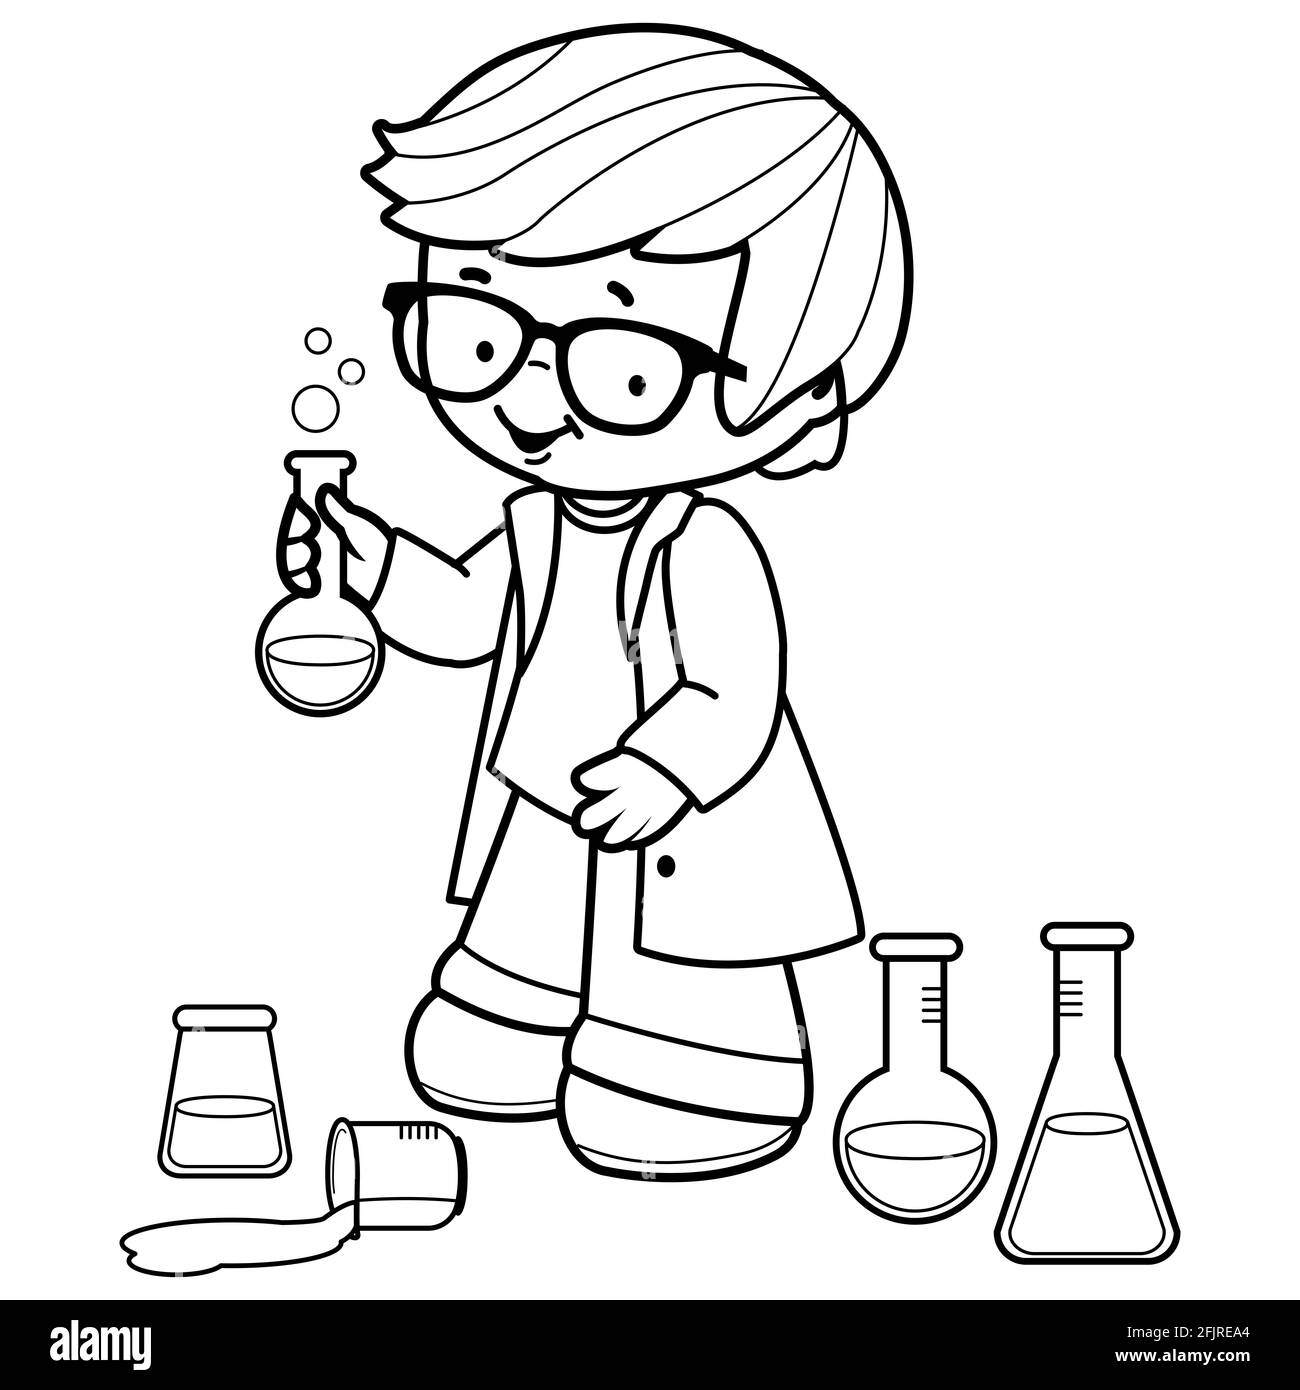 Junge, der chemische Reagenzgläser für wissenschaftliche Experimente verwendet. Schwarz-Weiß-Abbildung Stockfoto